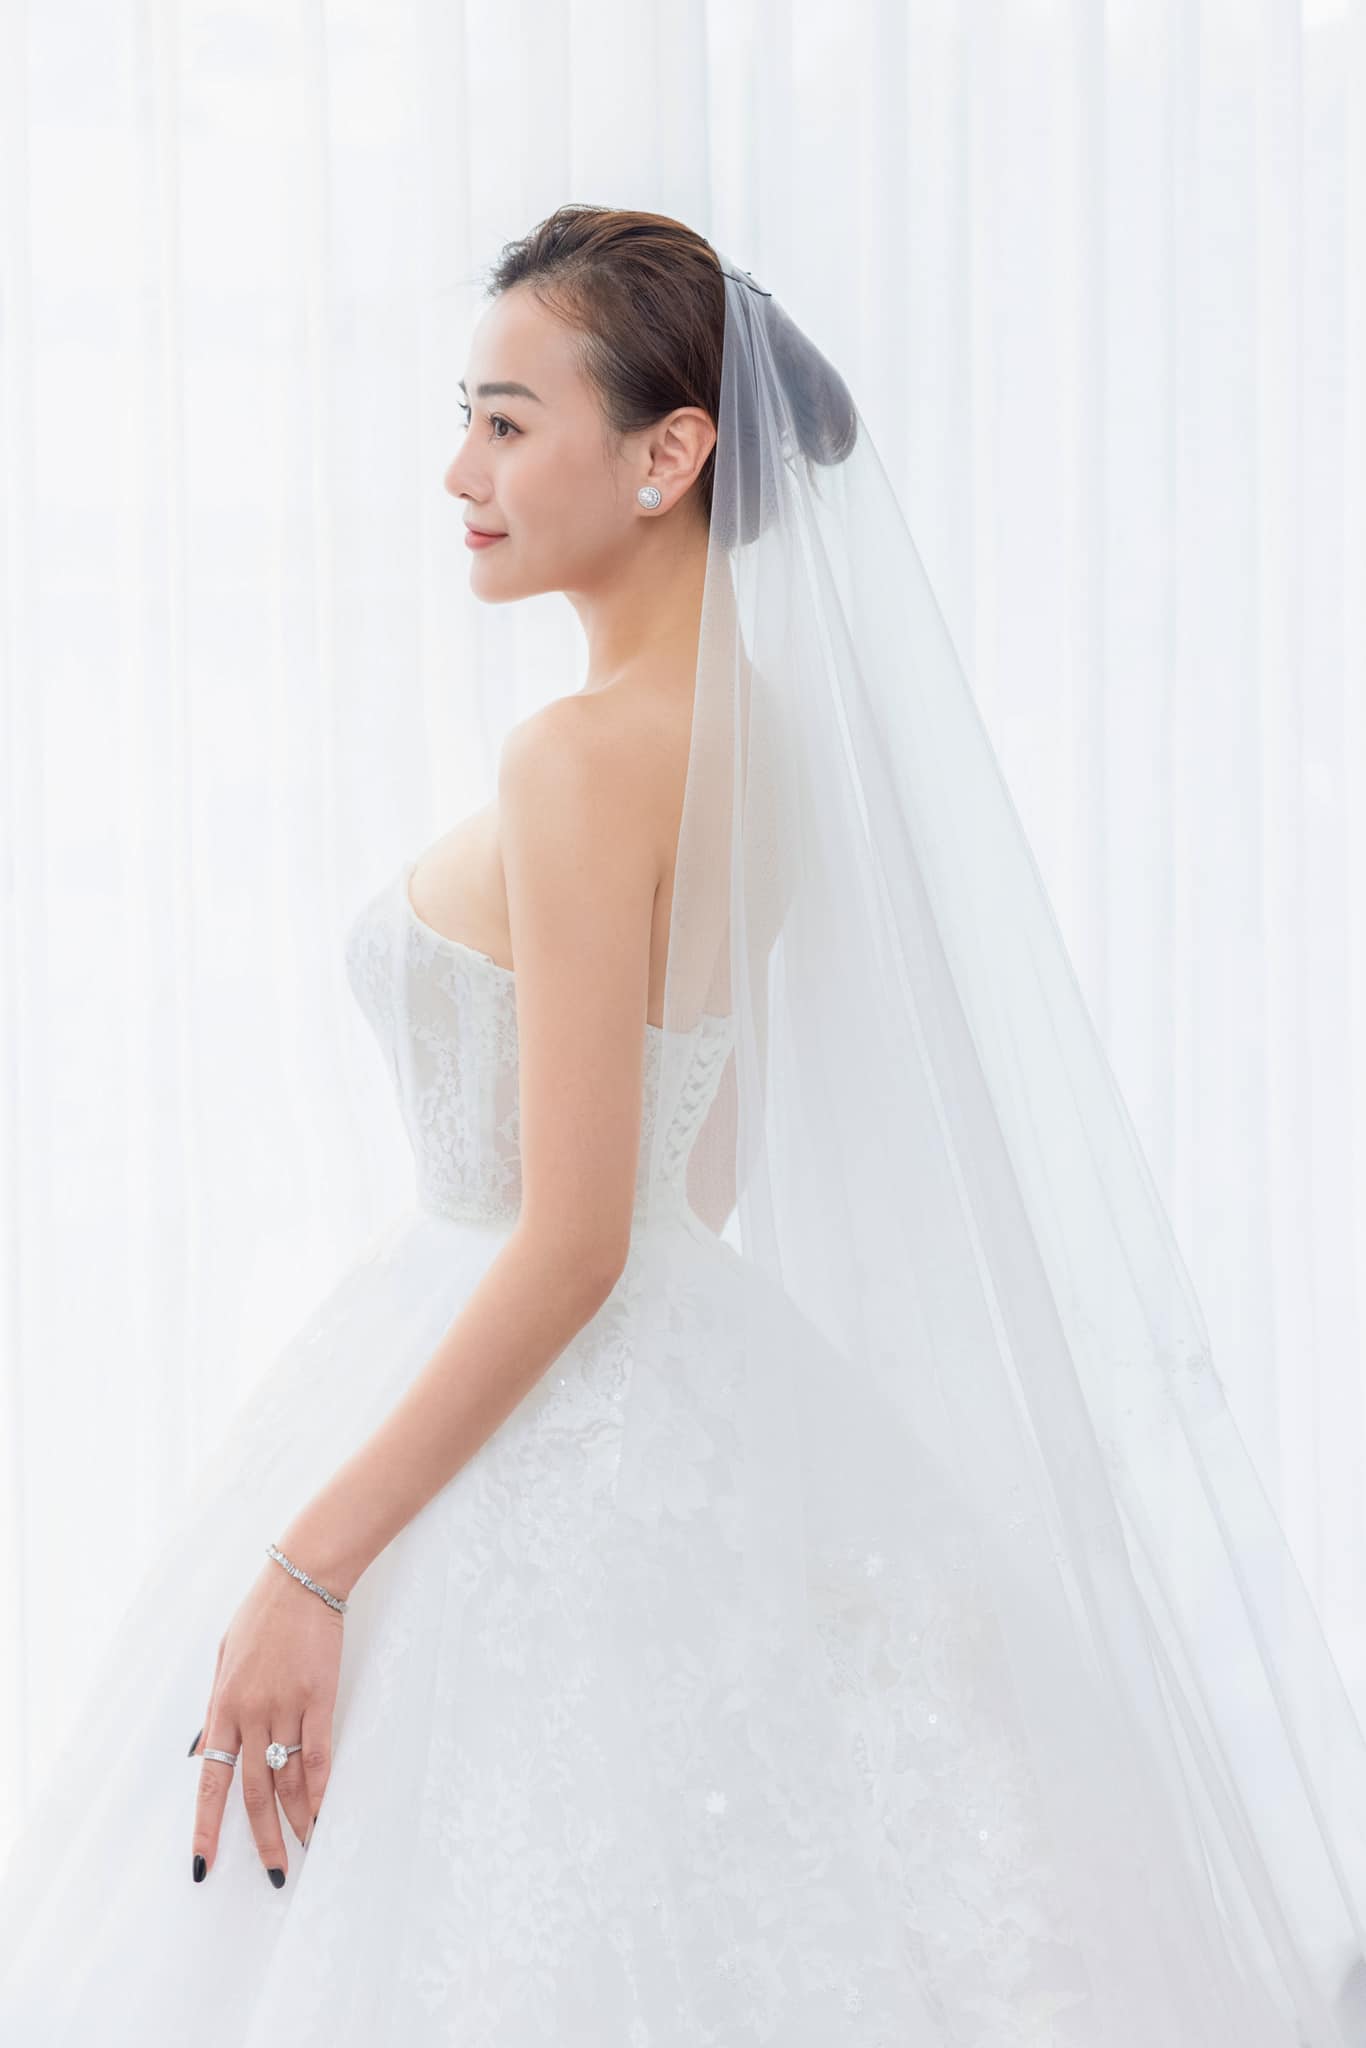 Phương Oanh đăng ảnh thử váy cưới